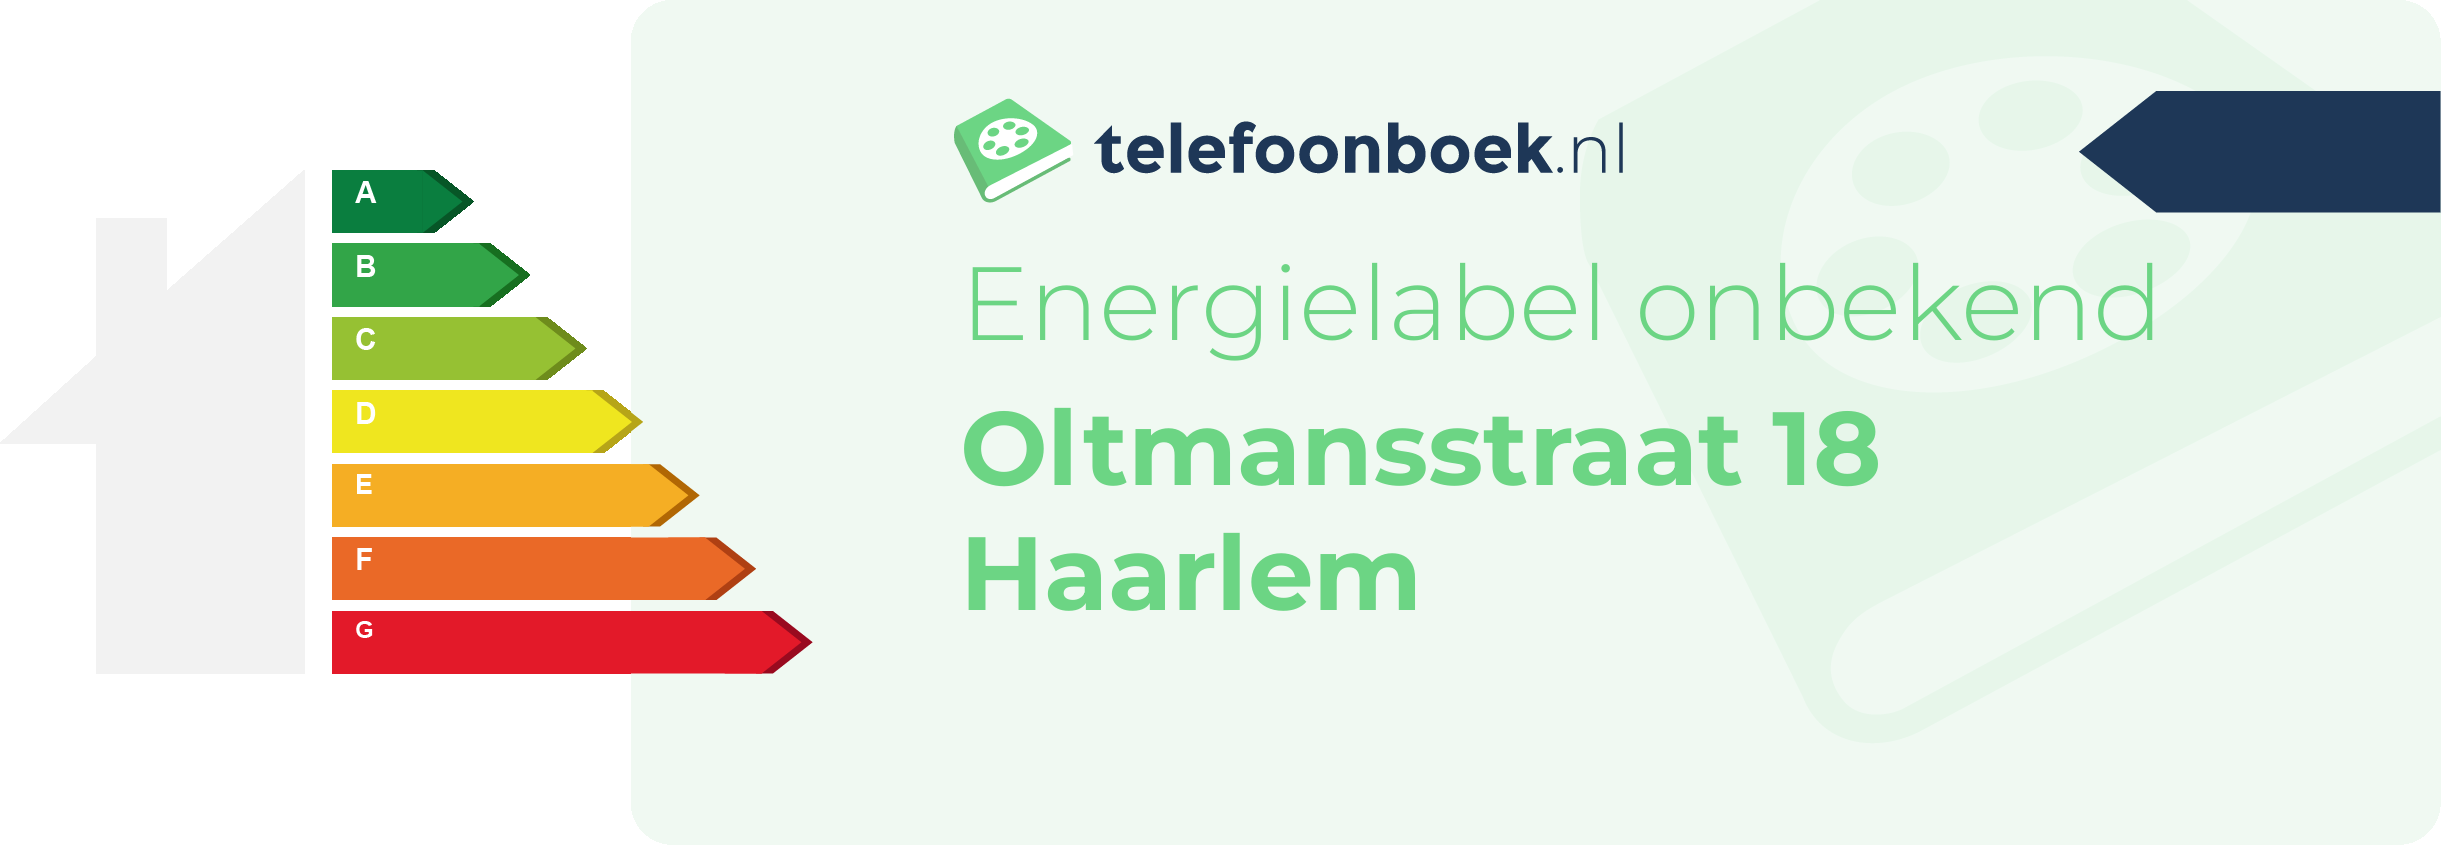 Energielabel Oltmansstraat 18 Haarlem